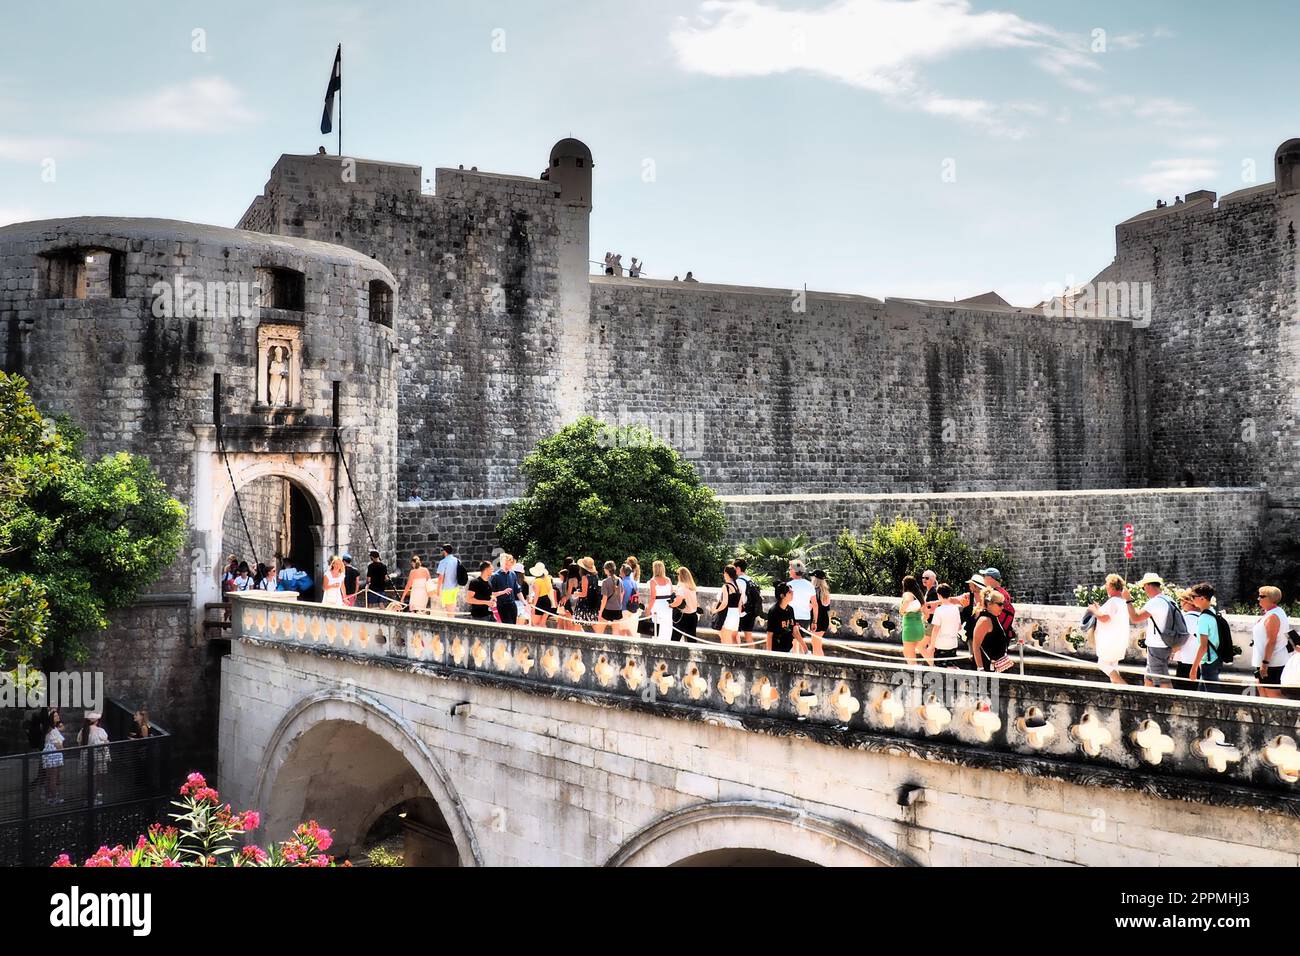 Pile Gate Dubrovnik Kroatien August 14 2022 Menschen Männer und Frauen gehen entlang der Steinbrücke zum Tor der Altstadt. Eine Menge Touristen. Geschäftiger Eingang. Haupteingang Altstadt, geschäftiges Pile Gate Stockfoto